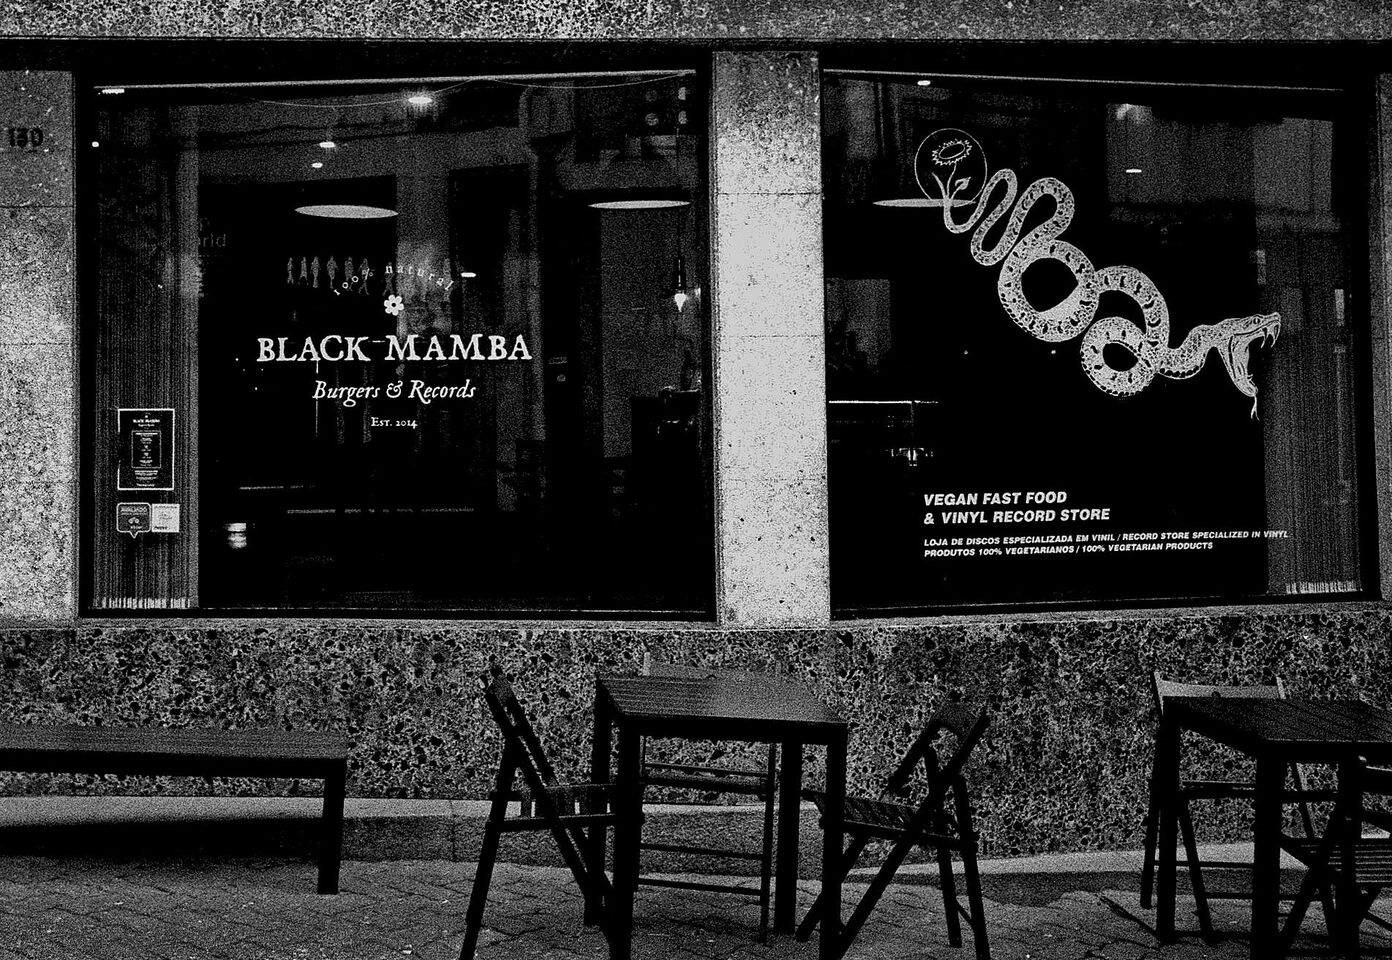 A photo of Black Mamba